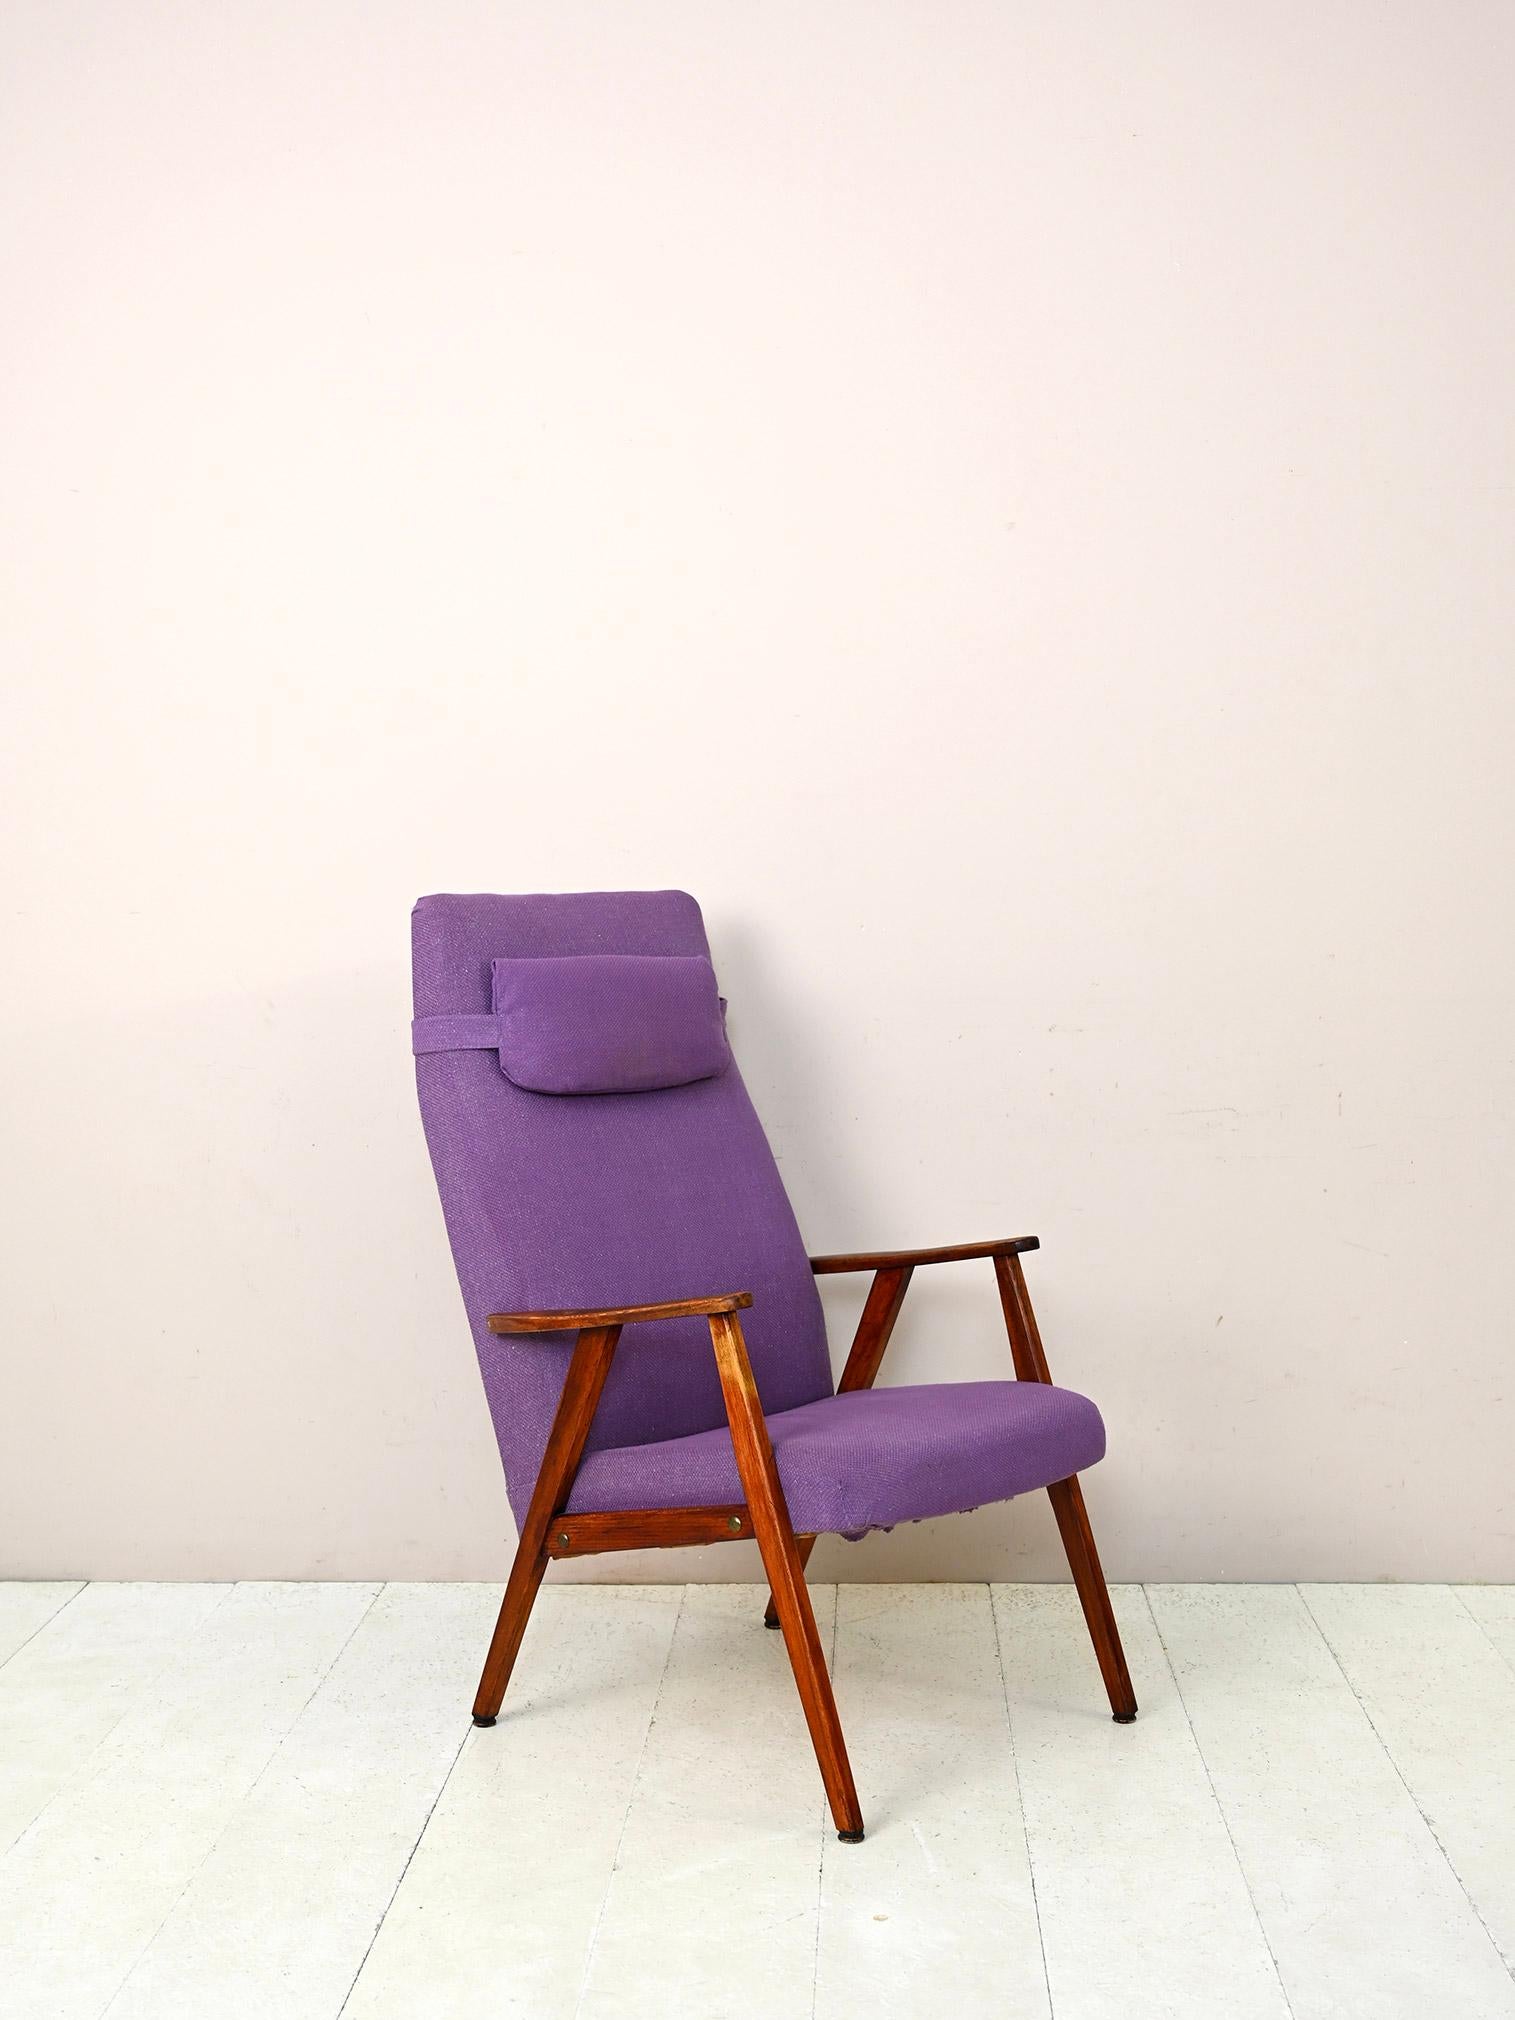 Original Vintage-Sessel aus den 1960er Jahren.

Ein modernes Möbelstück mit Holzgestell und gepolstertem Sitz, der mit lila Stoff bezogen ist. Außerdem gibt es ein bequemes Kopfkissen, das bei Bedarf abgenommen werden kann.
Dank der einfachen Linien